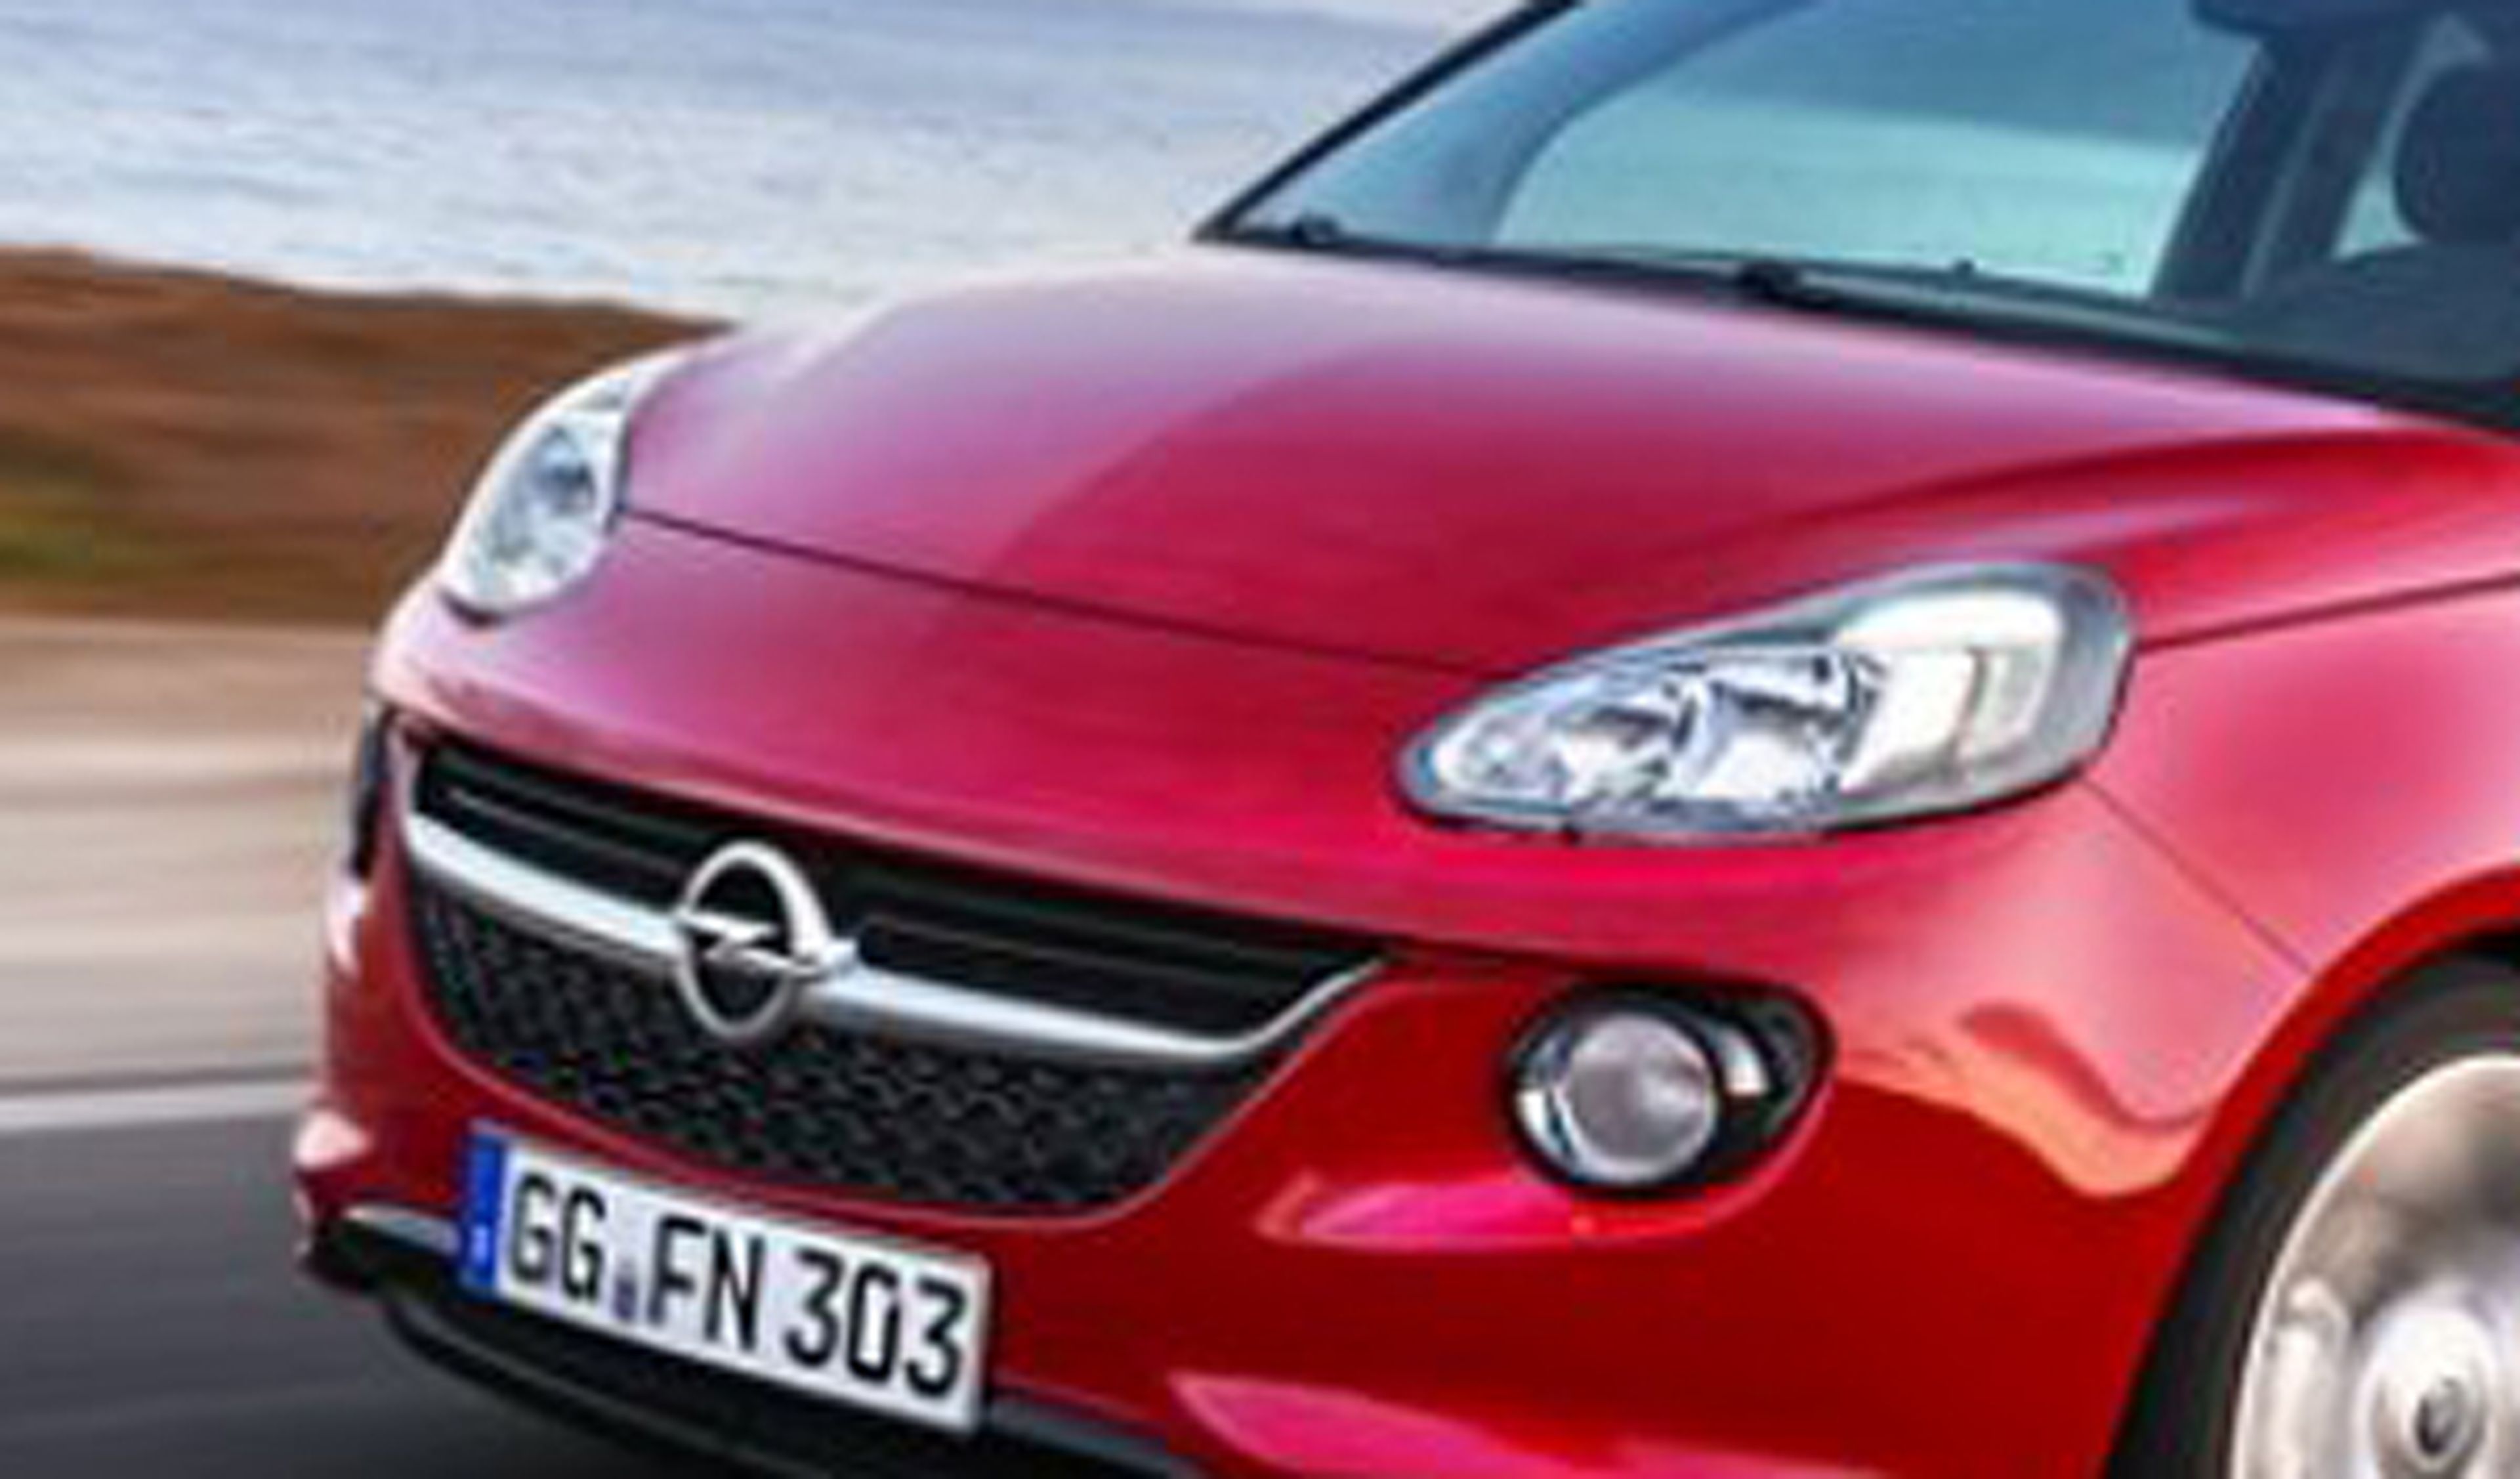 Opel planea lanzar un modelo por menos de 10.000 euros